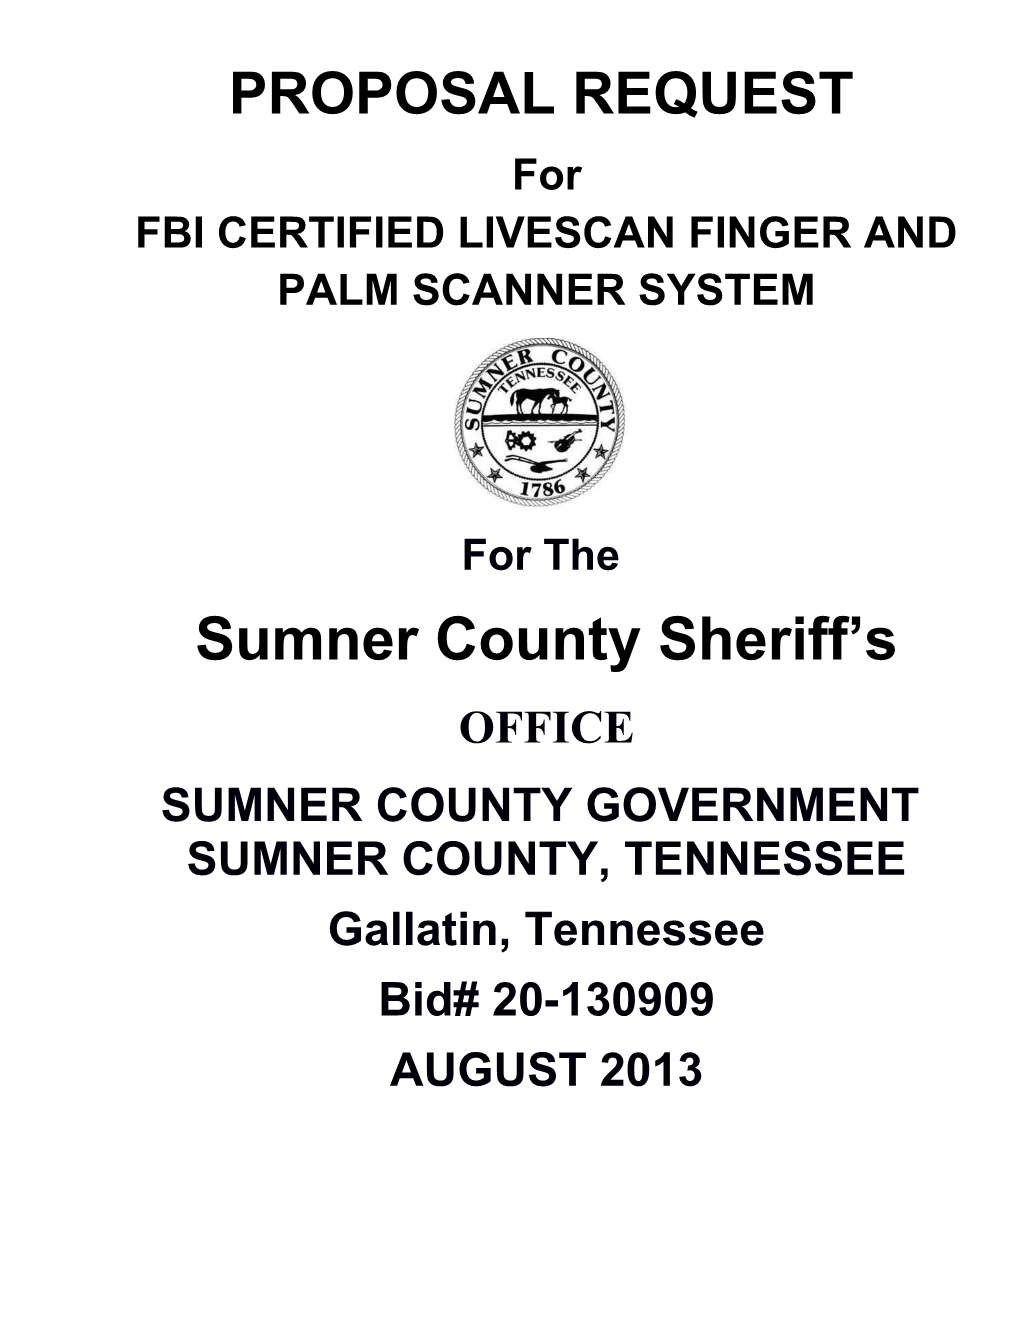 Fbi Certified Livescan Finger and Palm Scanner System